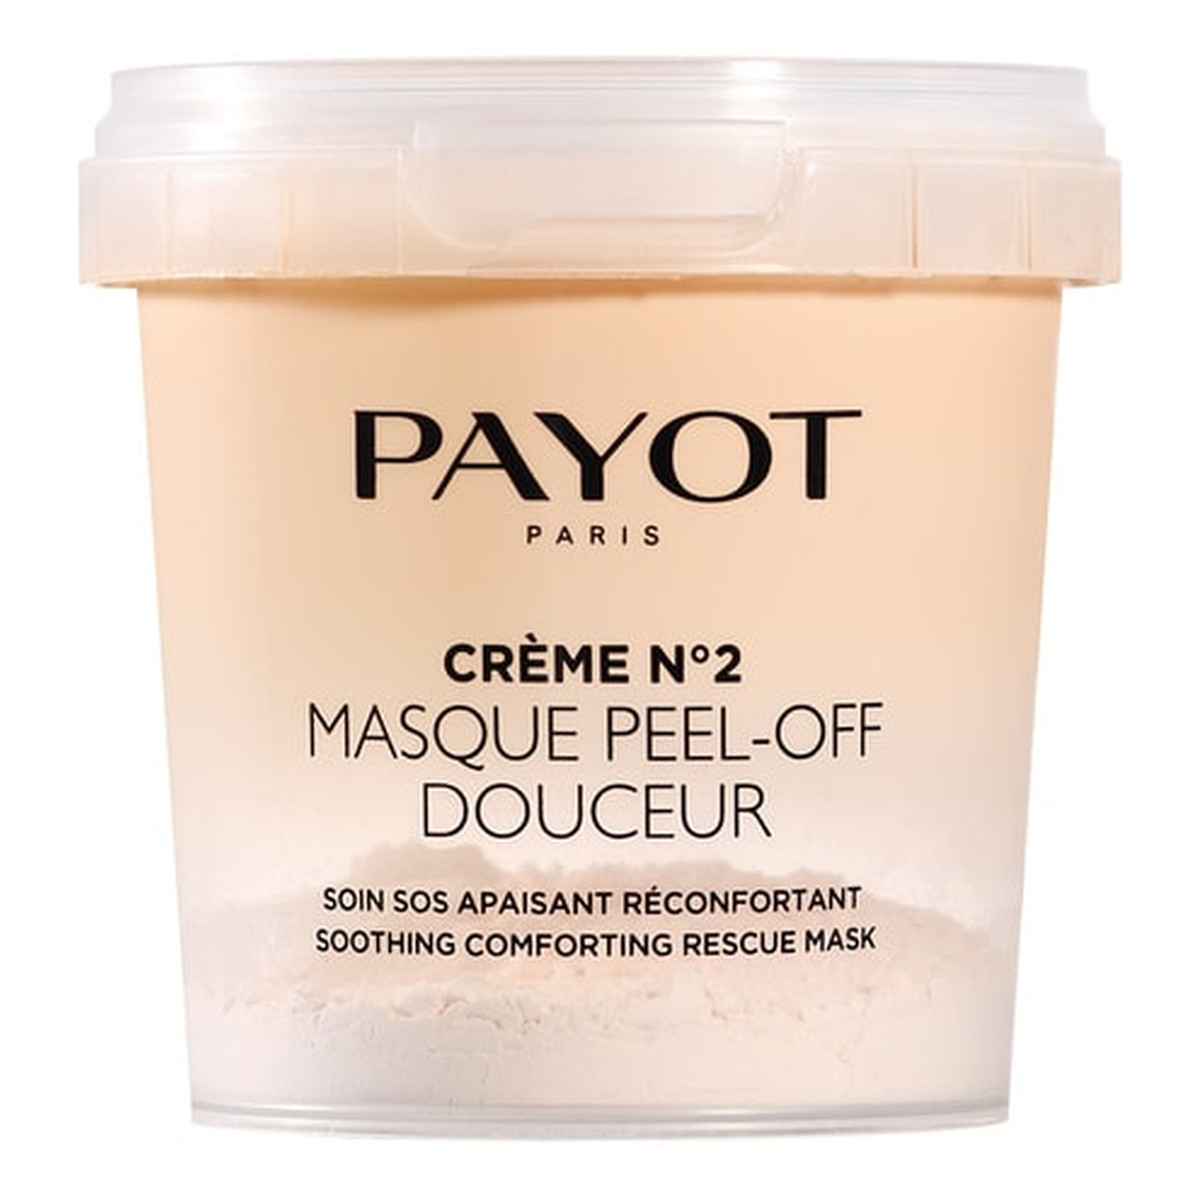 Payot Creme no 2 masque peel off douceur łagodząca maska do twarzy przywracająca komfort 10g